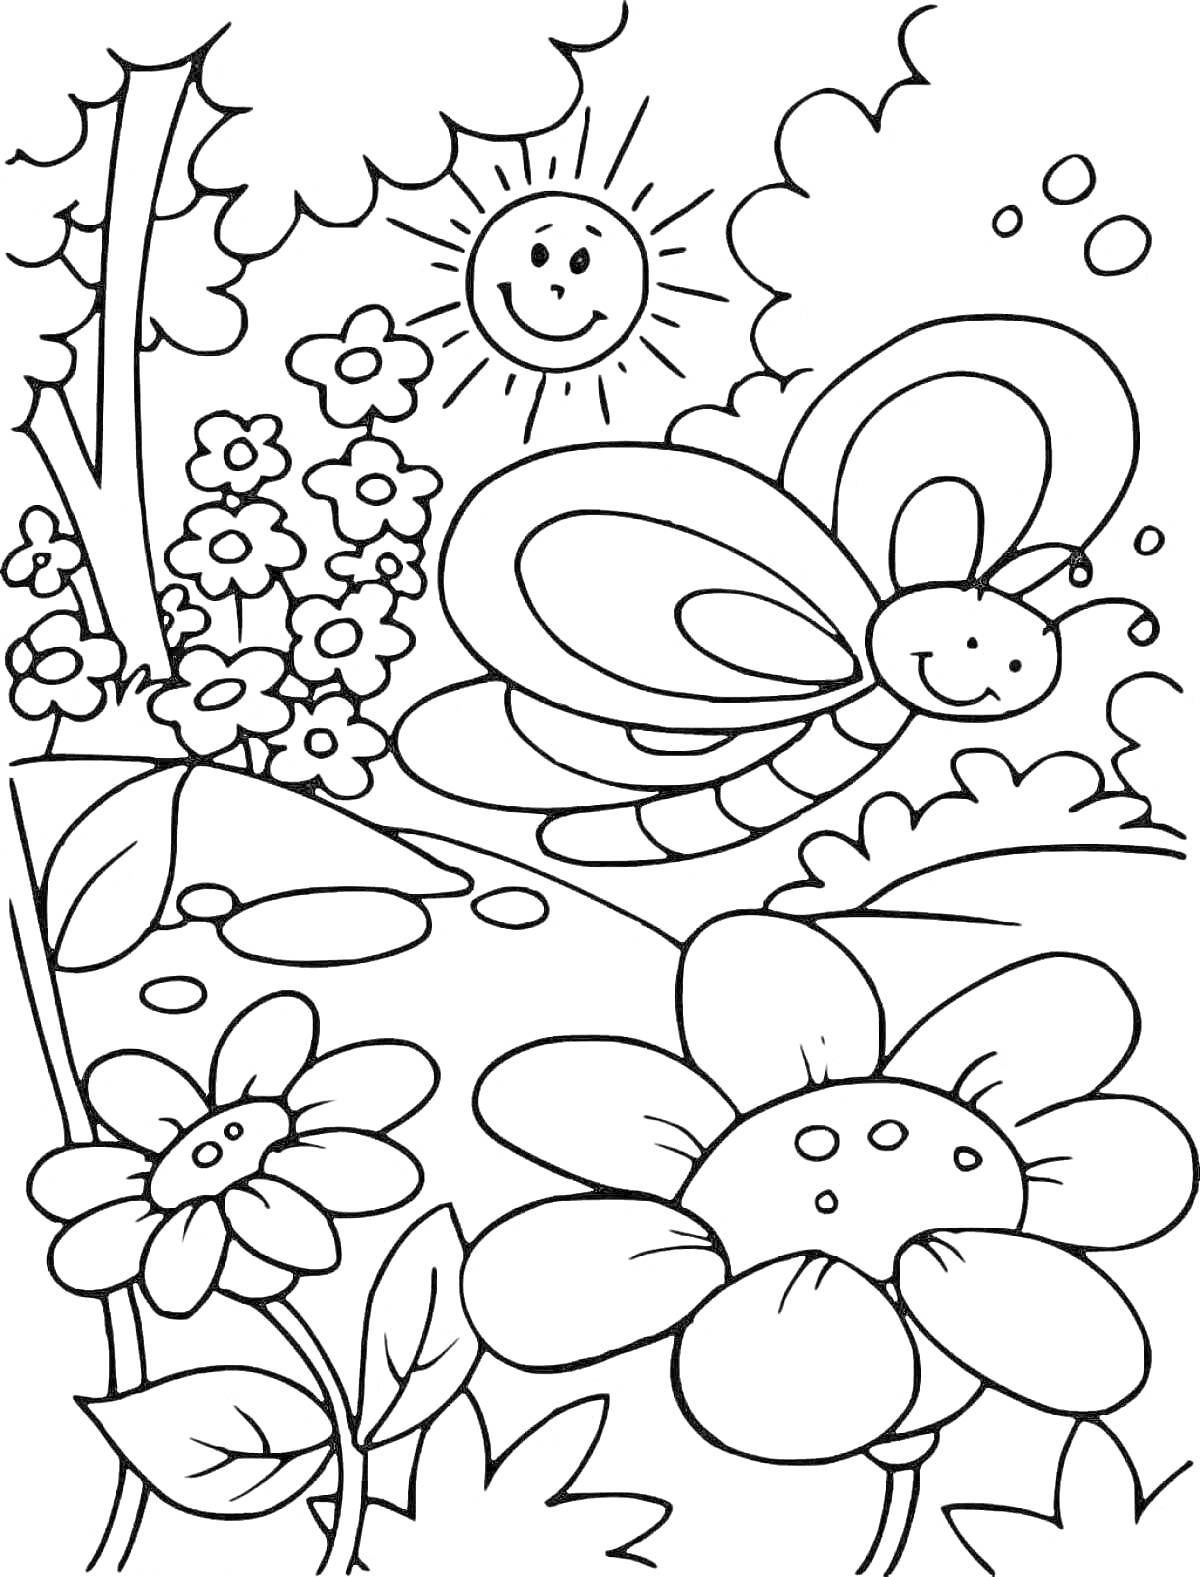 Раскраска Рисунок с природой, включающий солнце, бабочку, цветы и кусты